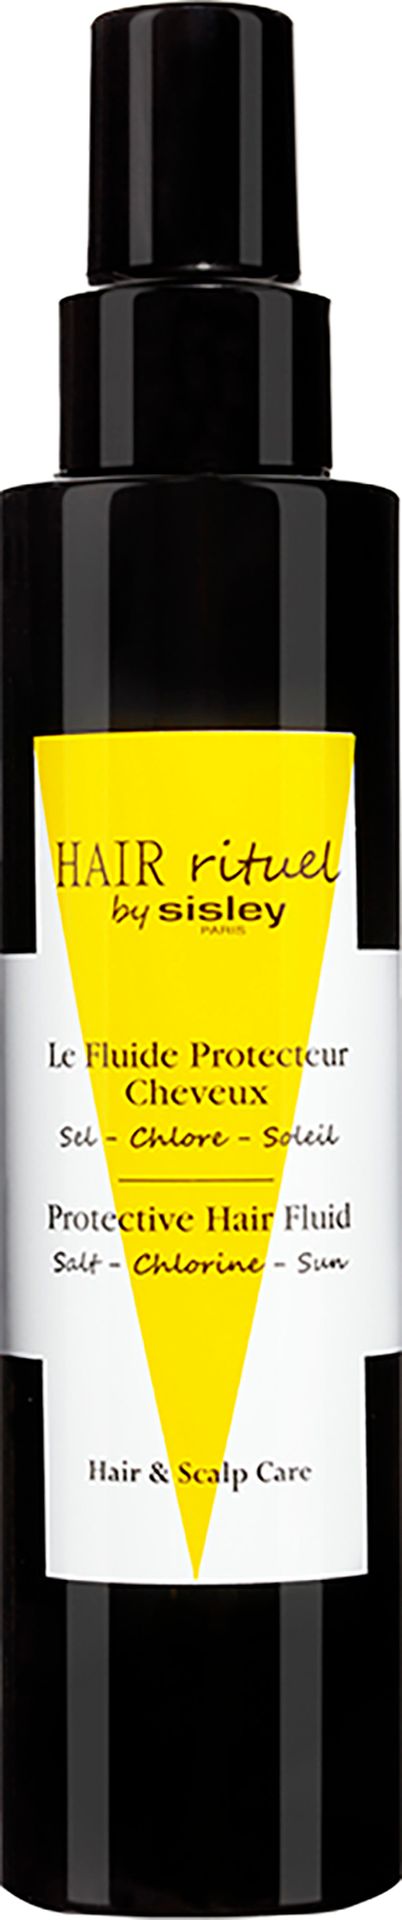 Hair Rituel By Sisley Le Fluide Protecteur Cheveux